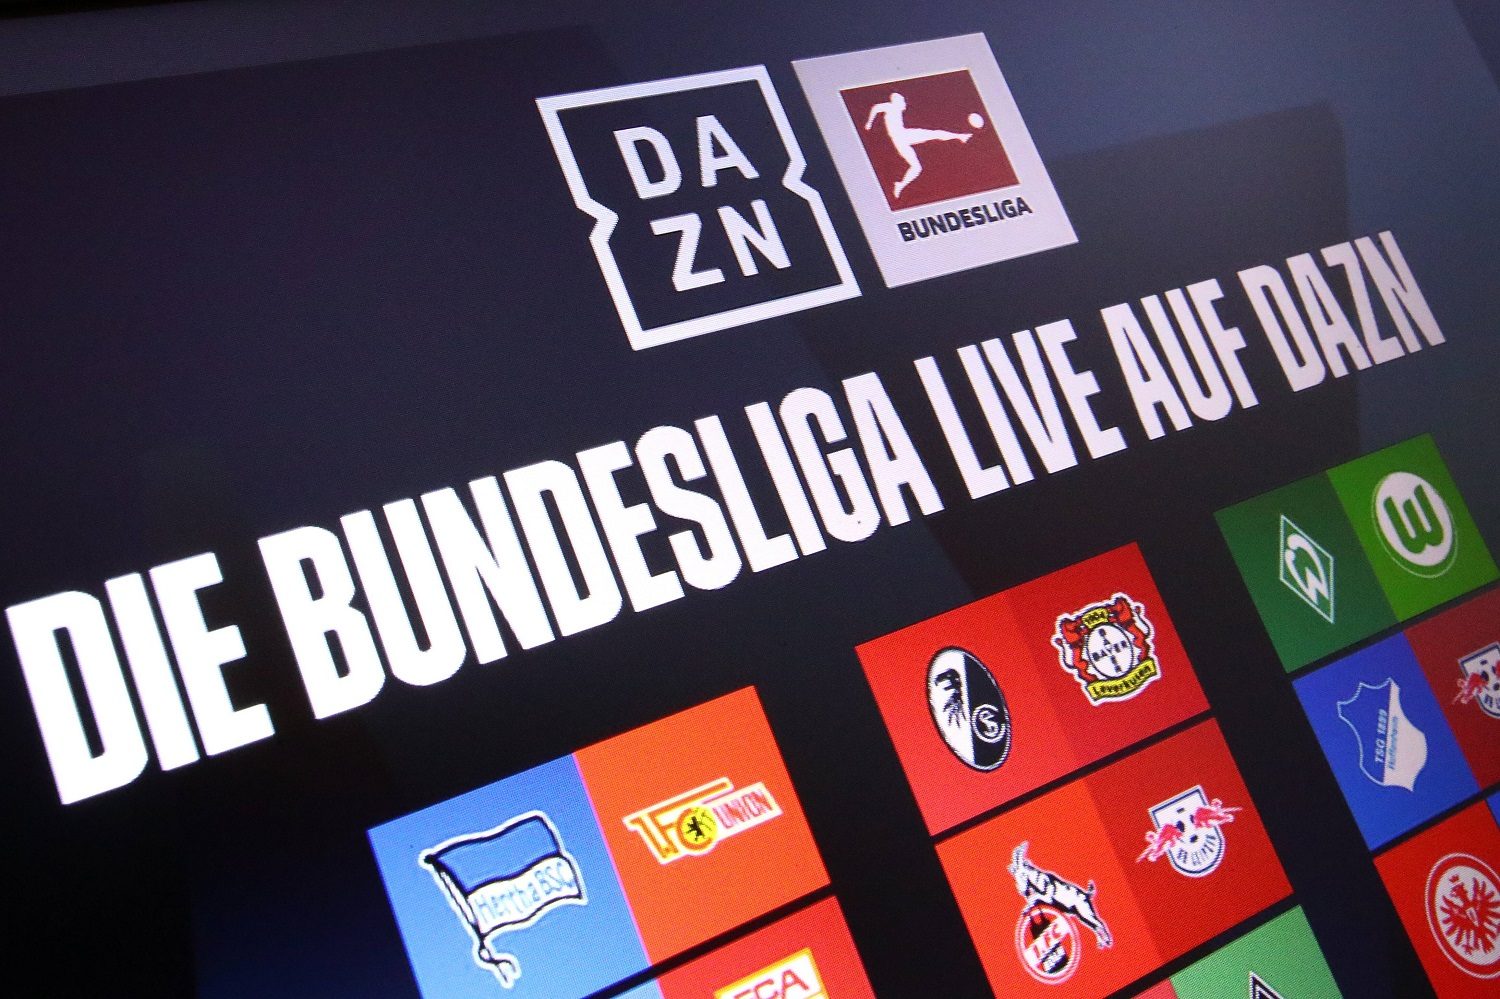 Bundesliga-TV-Rechte